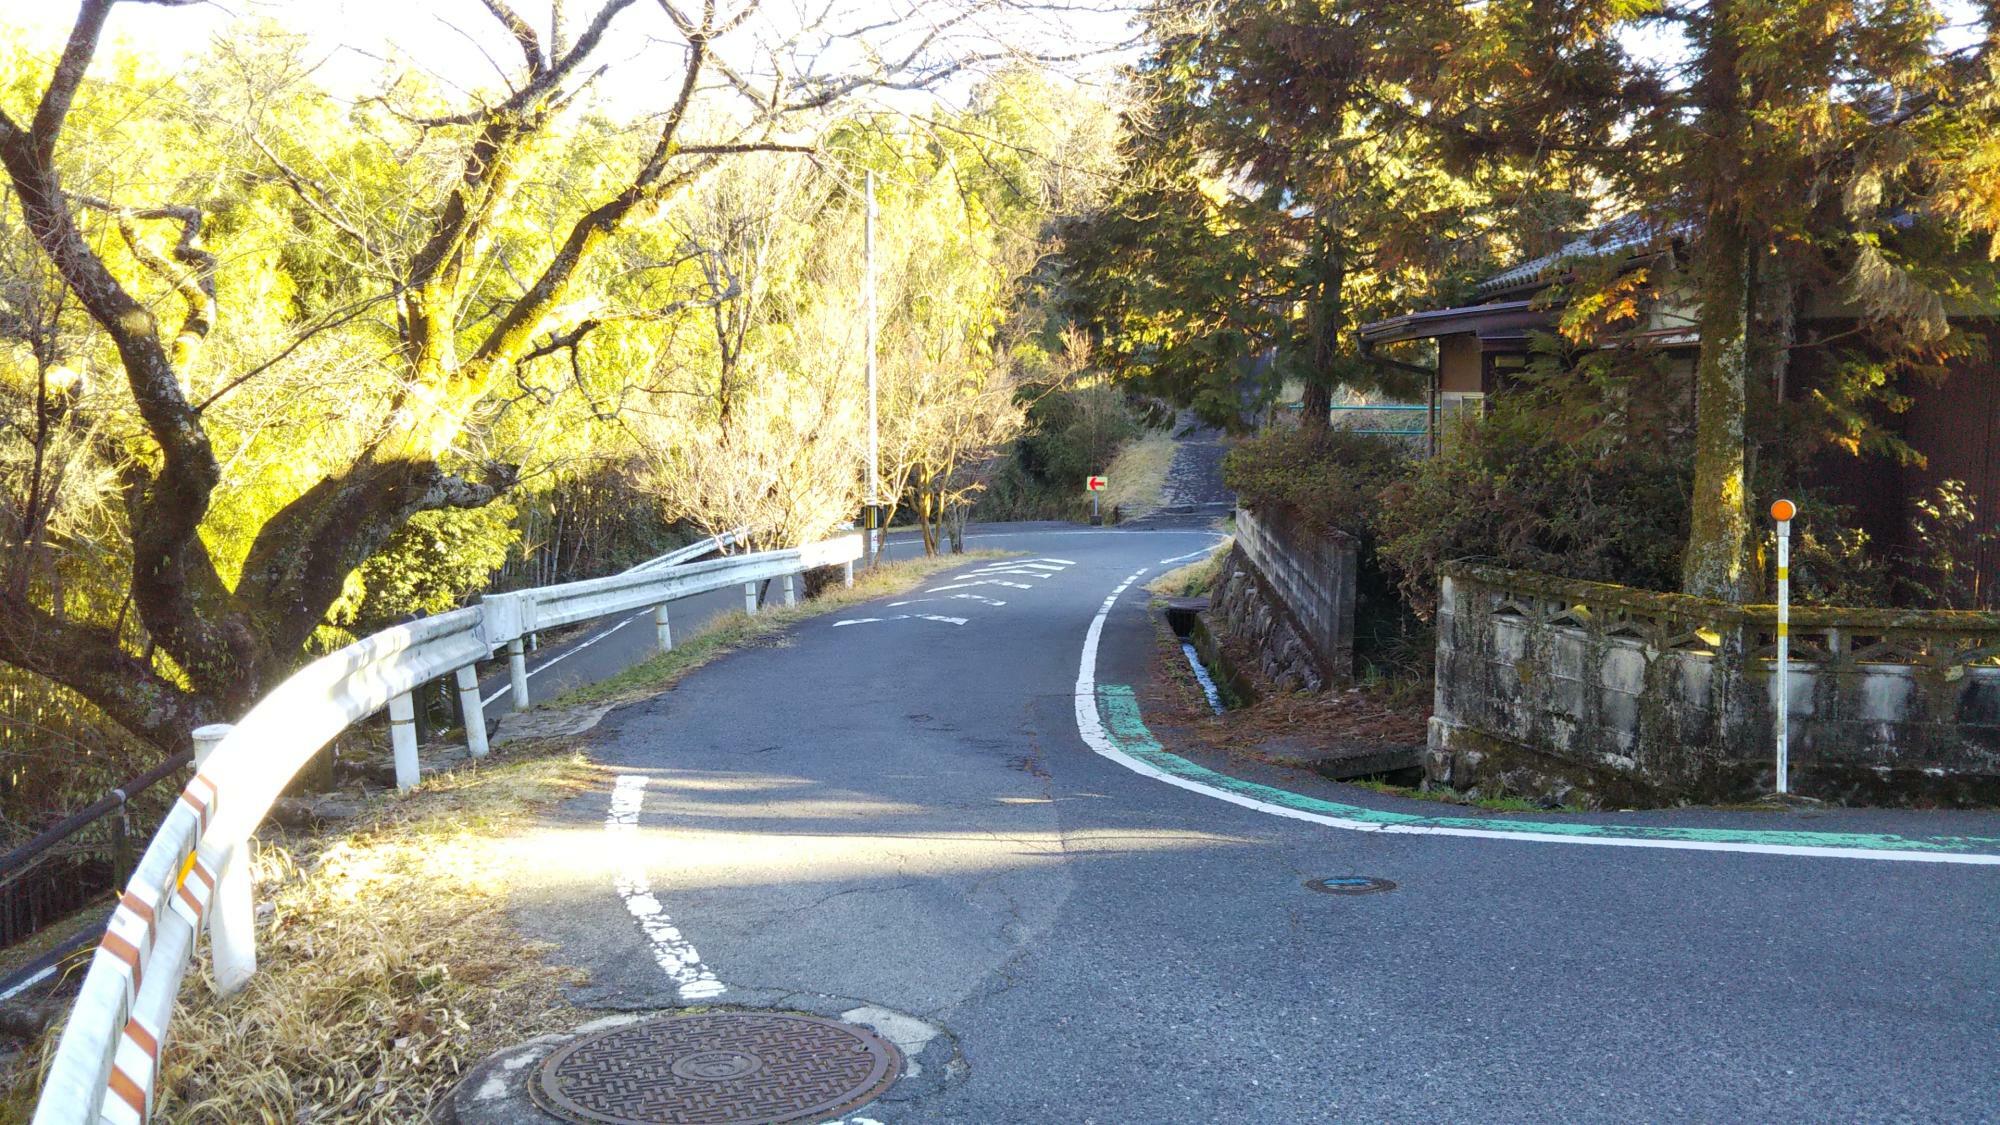 ジャンクションから見て、こちらが中山道。いきなりの坂です。こでの木坂と呼ばれています